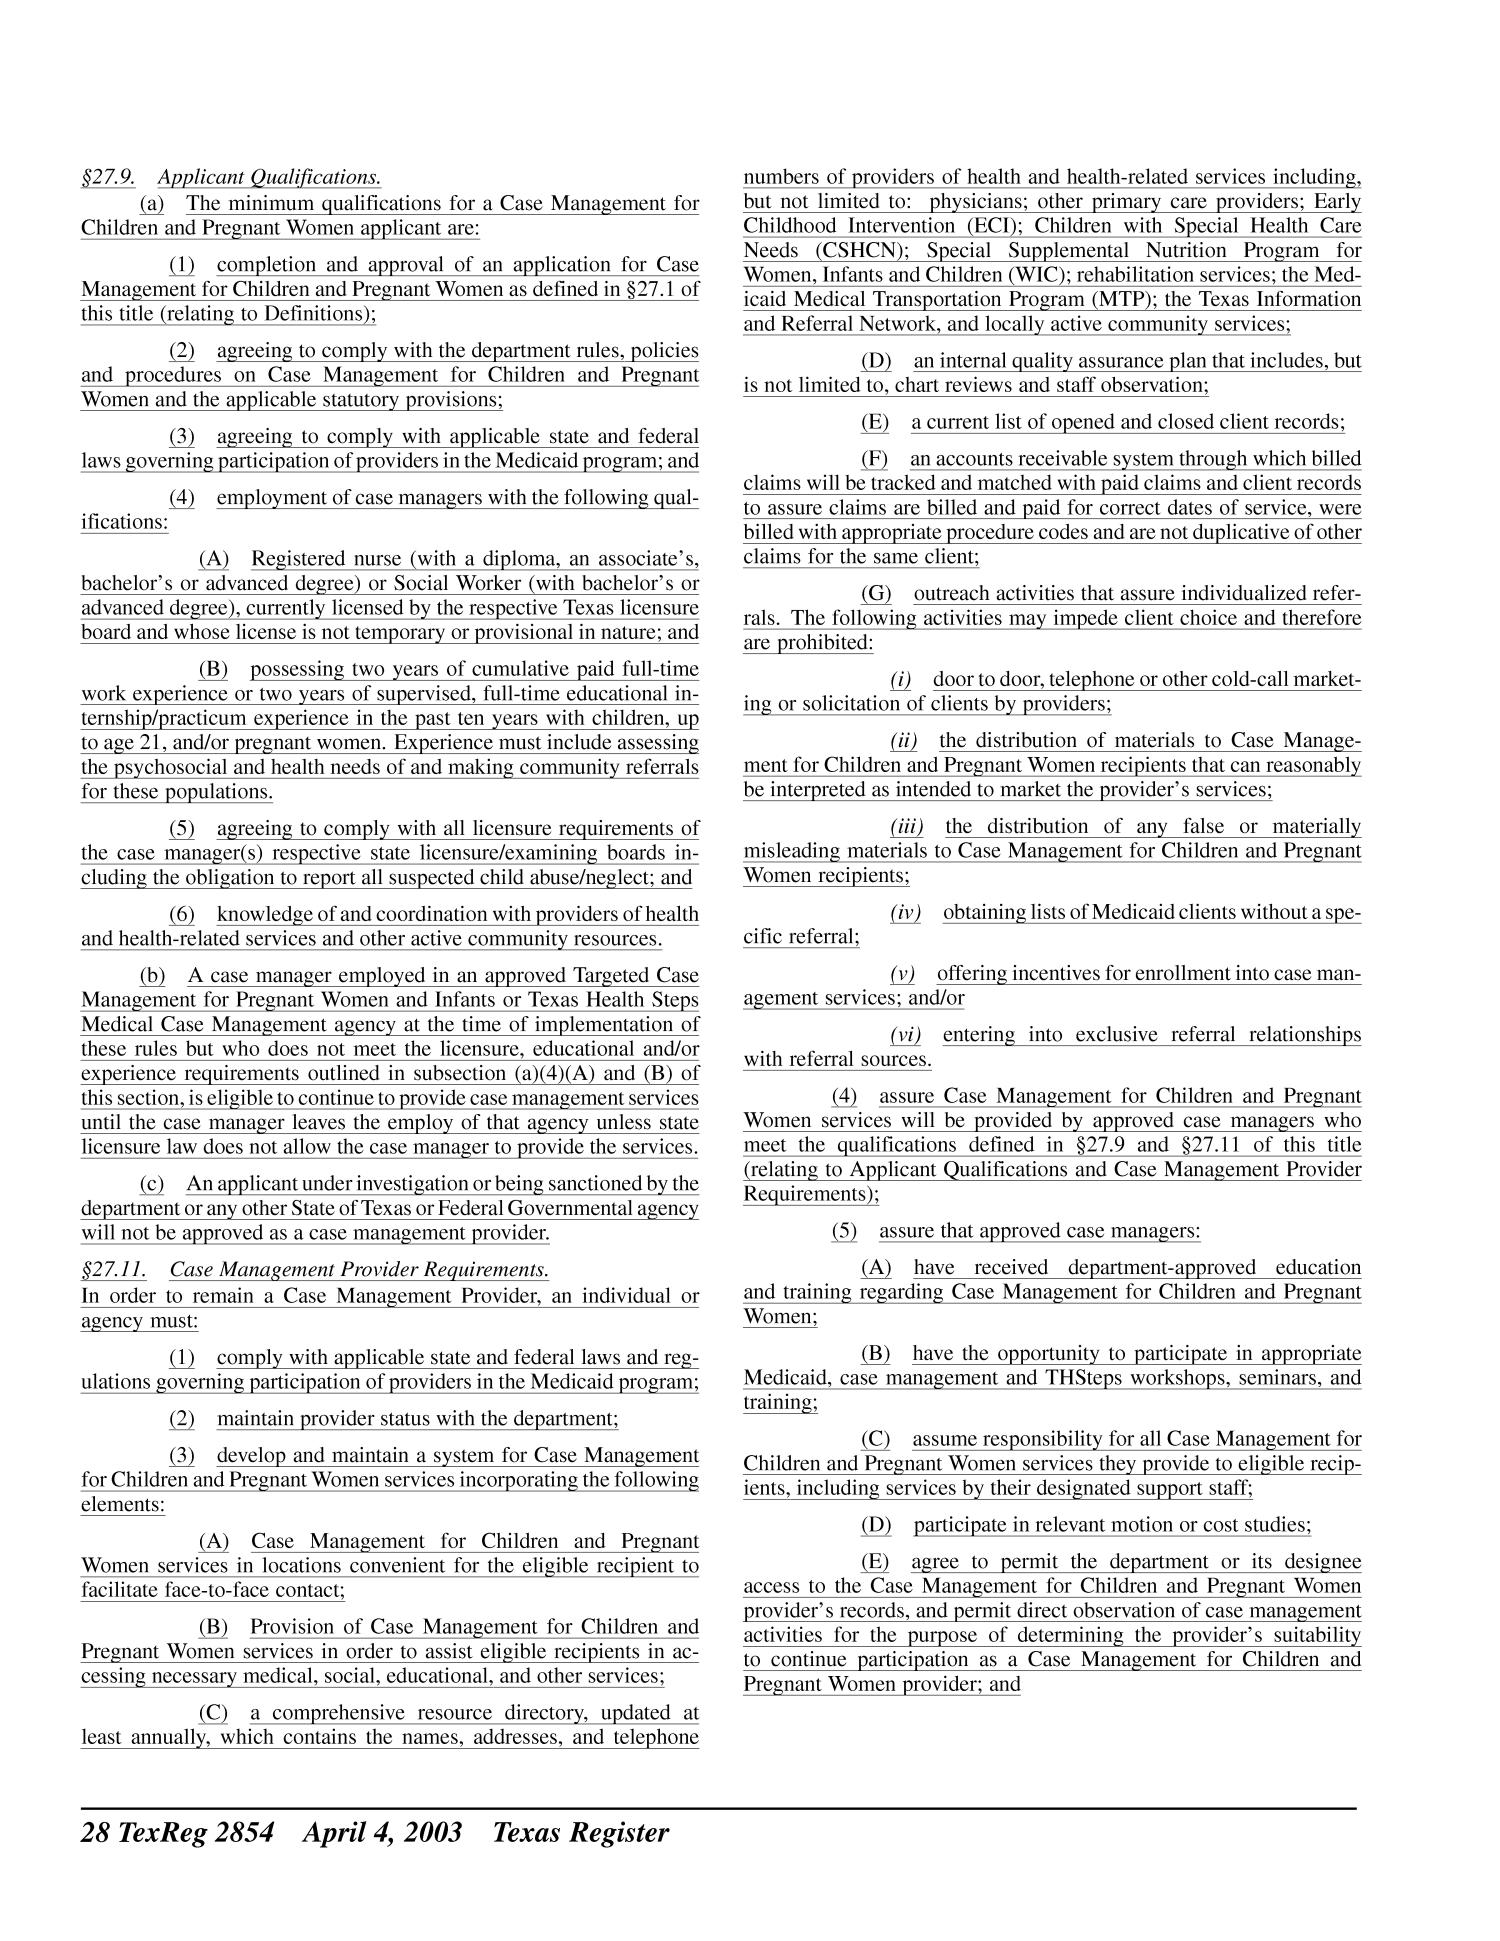 Texas Register, Volume 28, Number 14, Pages 2821-2988, April 4, 2003
                                                
                                                    2854
                                                